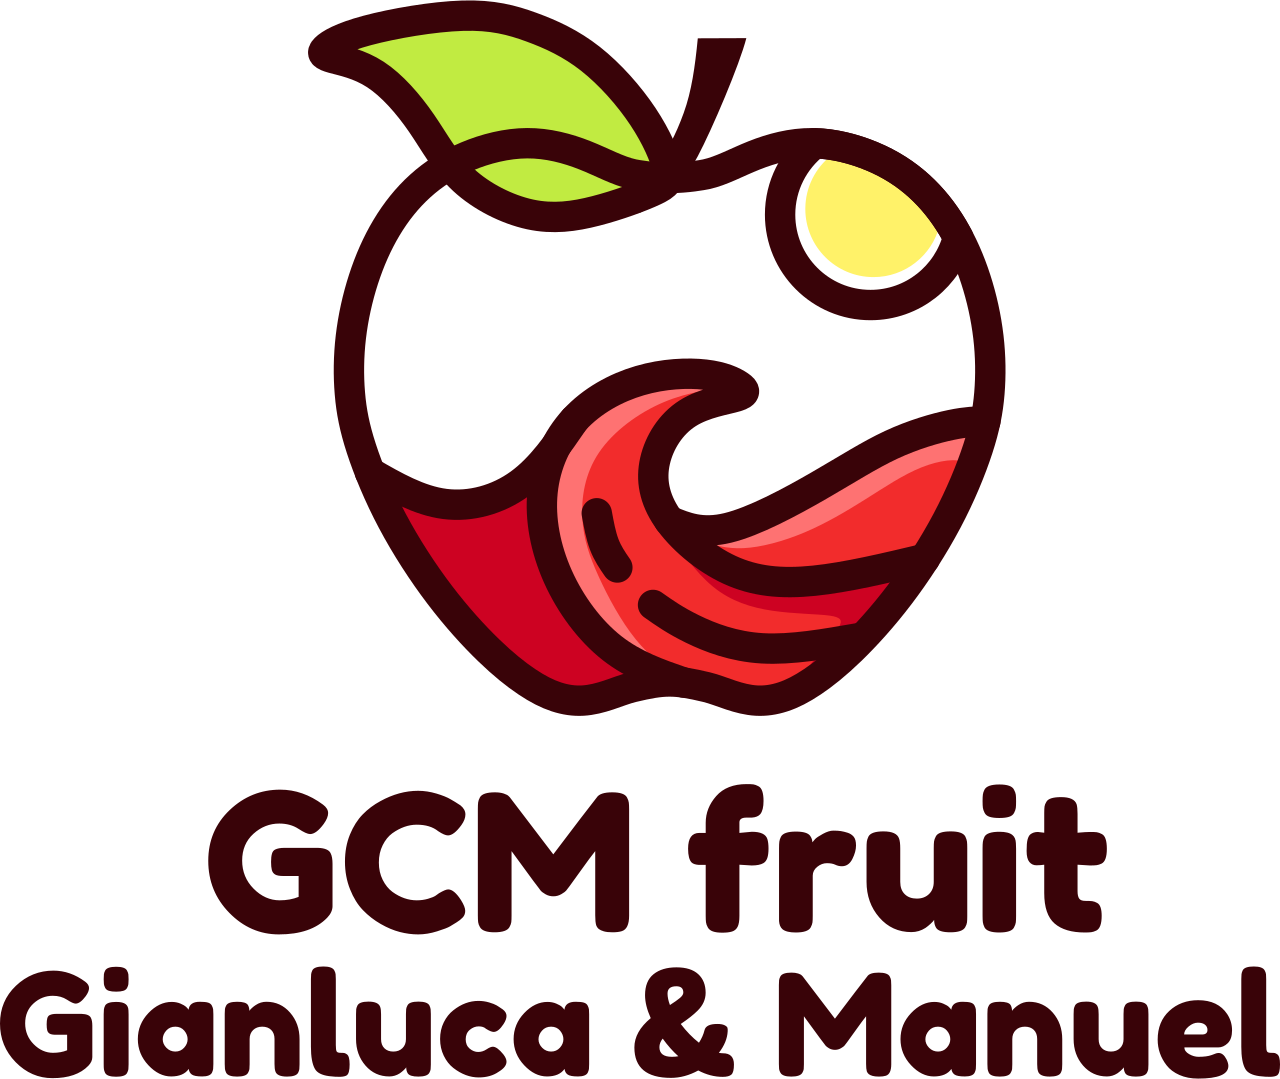 GCM fruit's logo